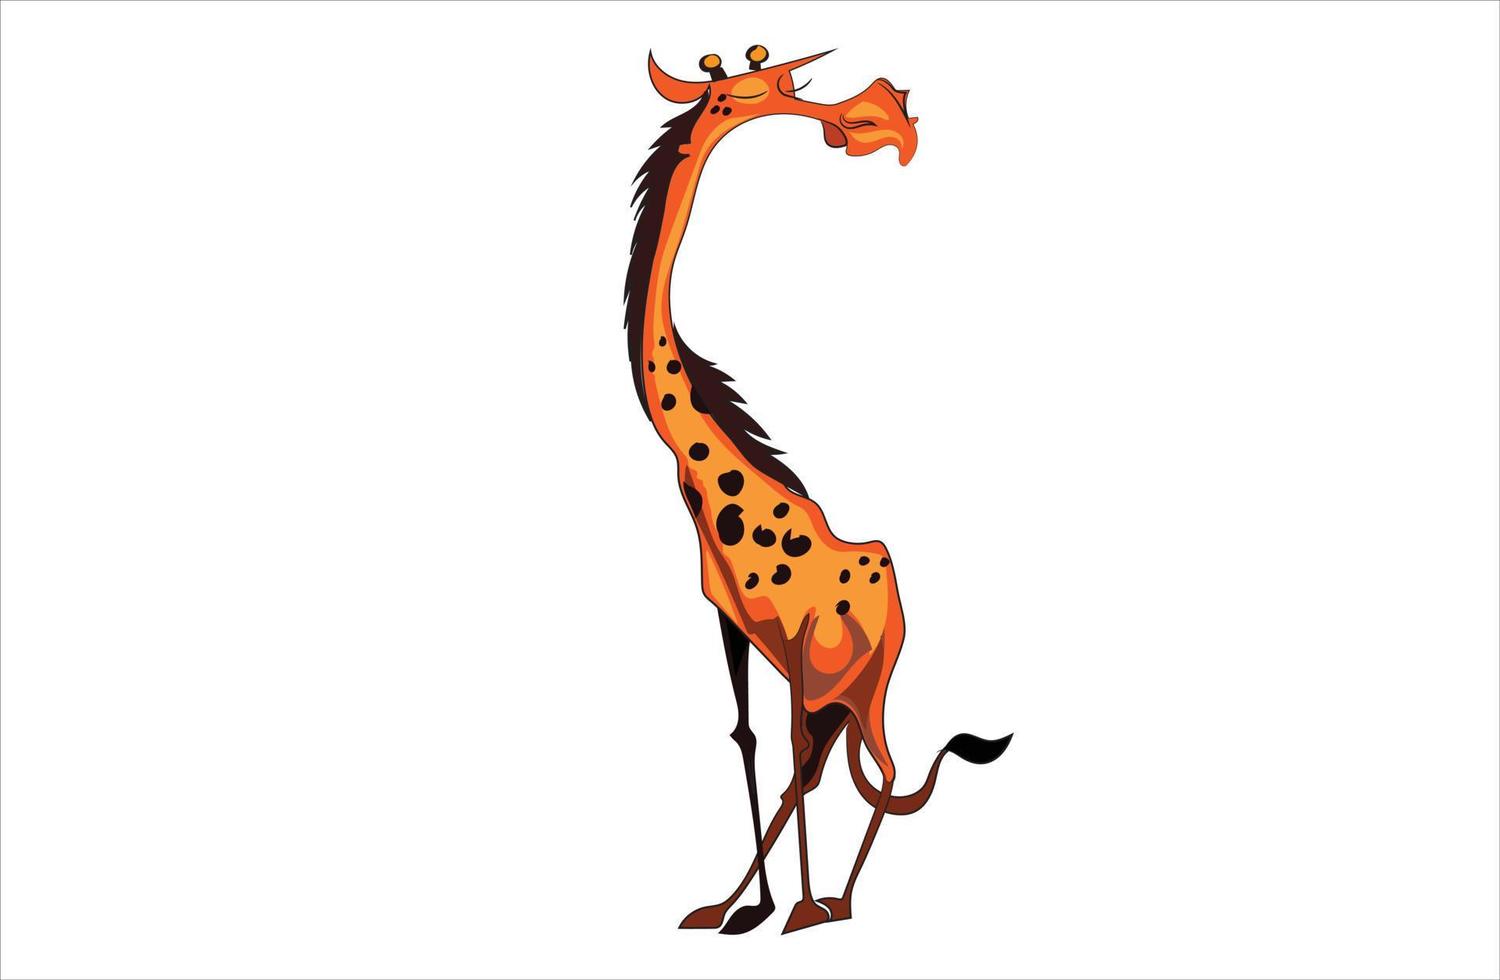 giraffe vector illustration on white background